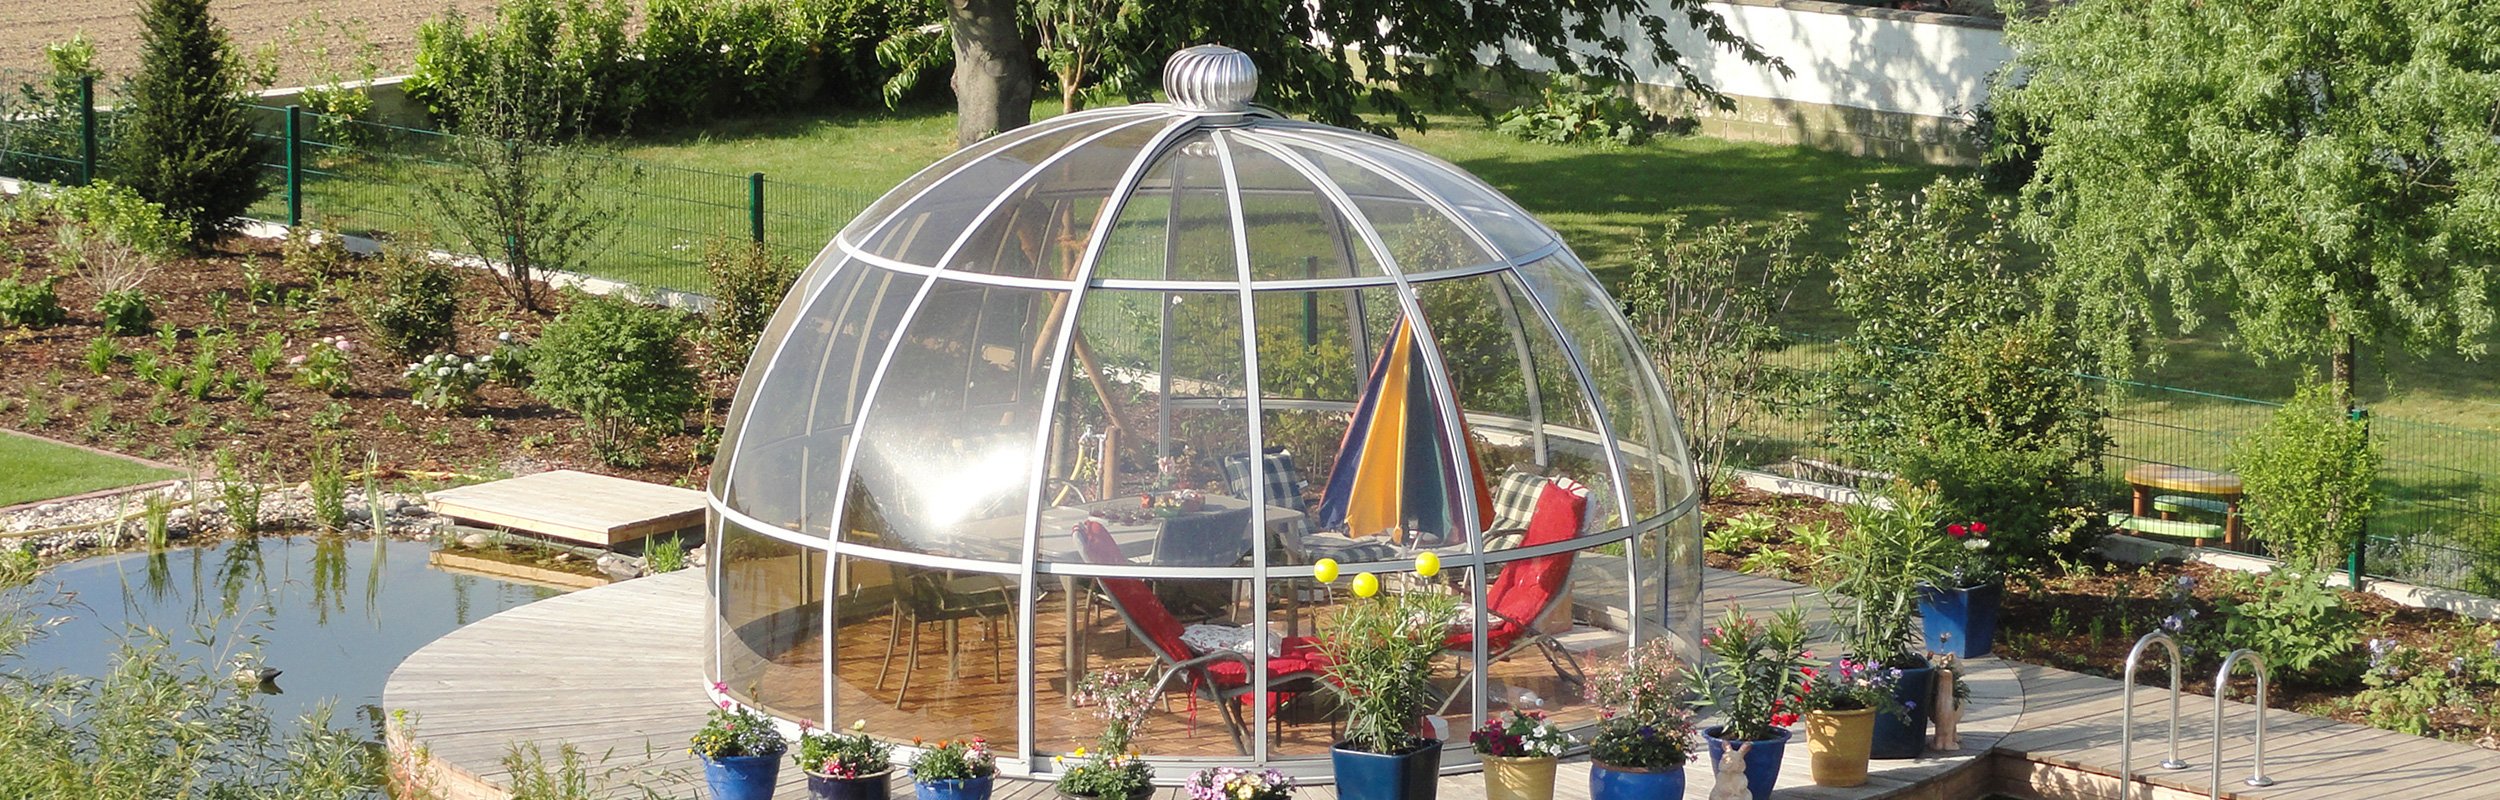 Pavillon Rondo Solar im Garten